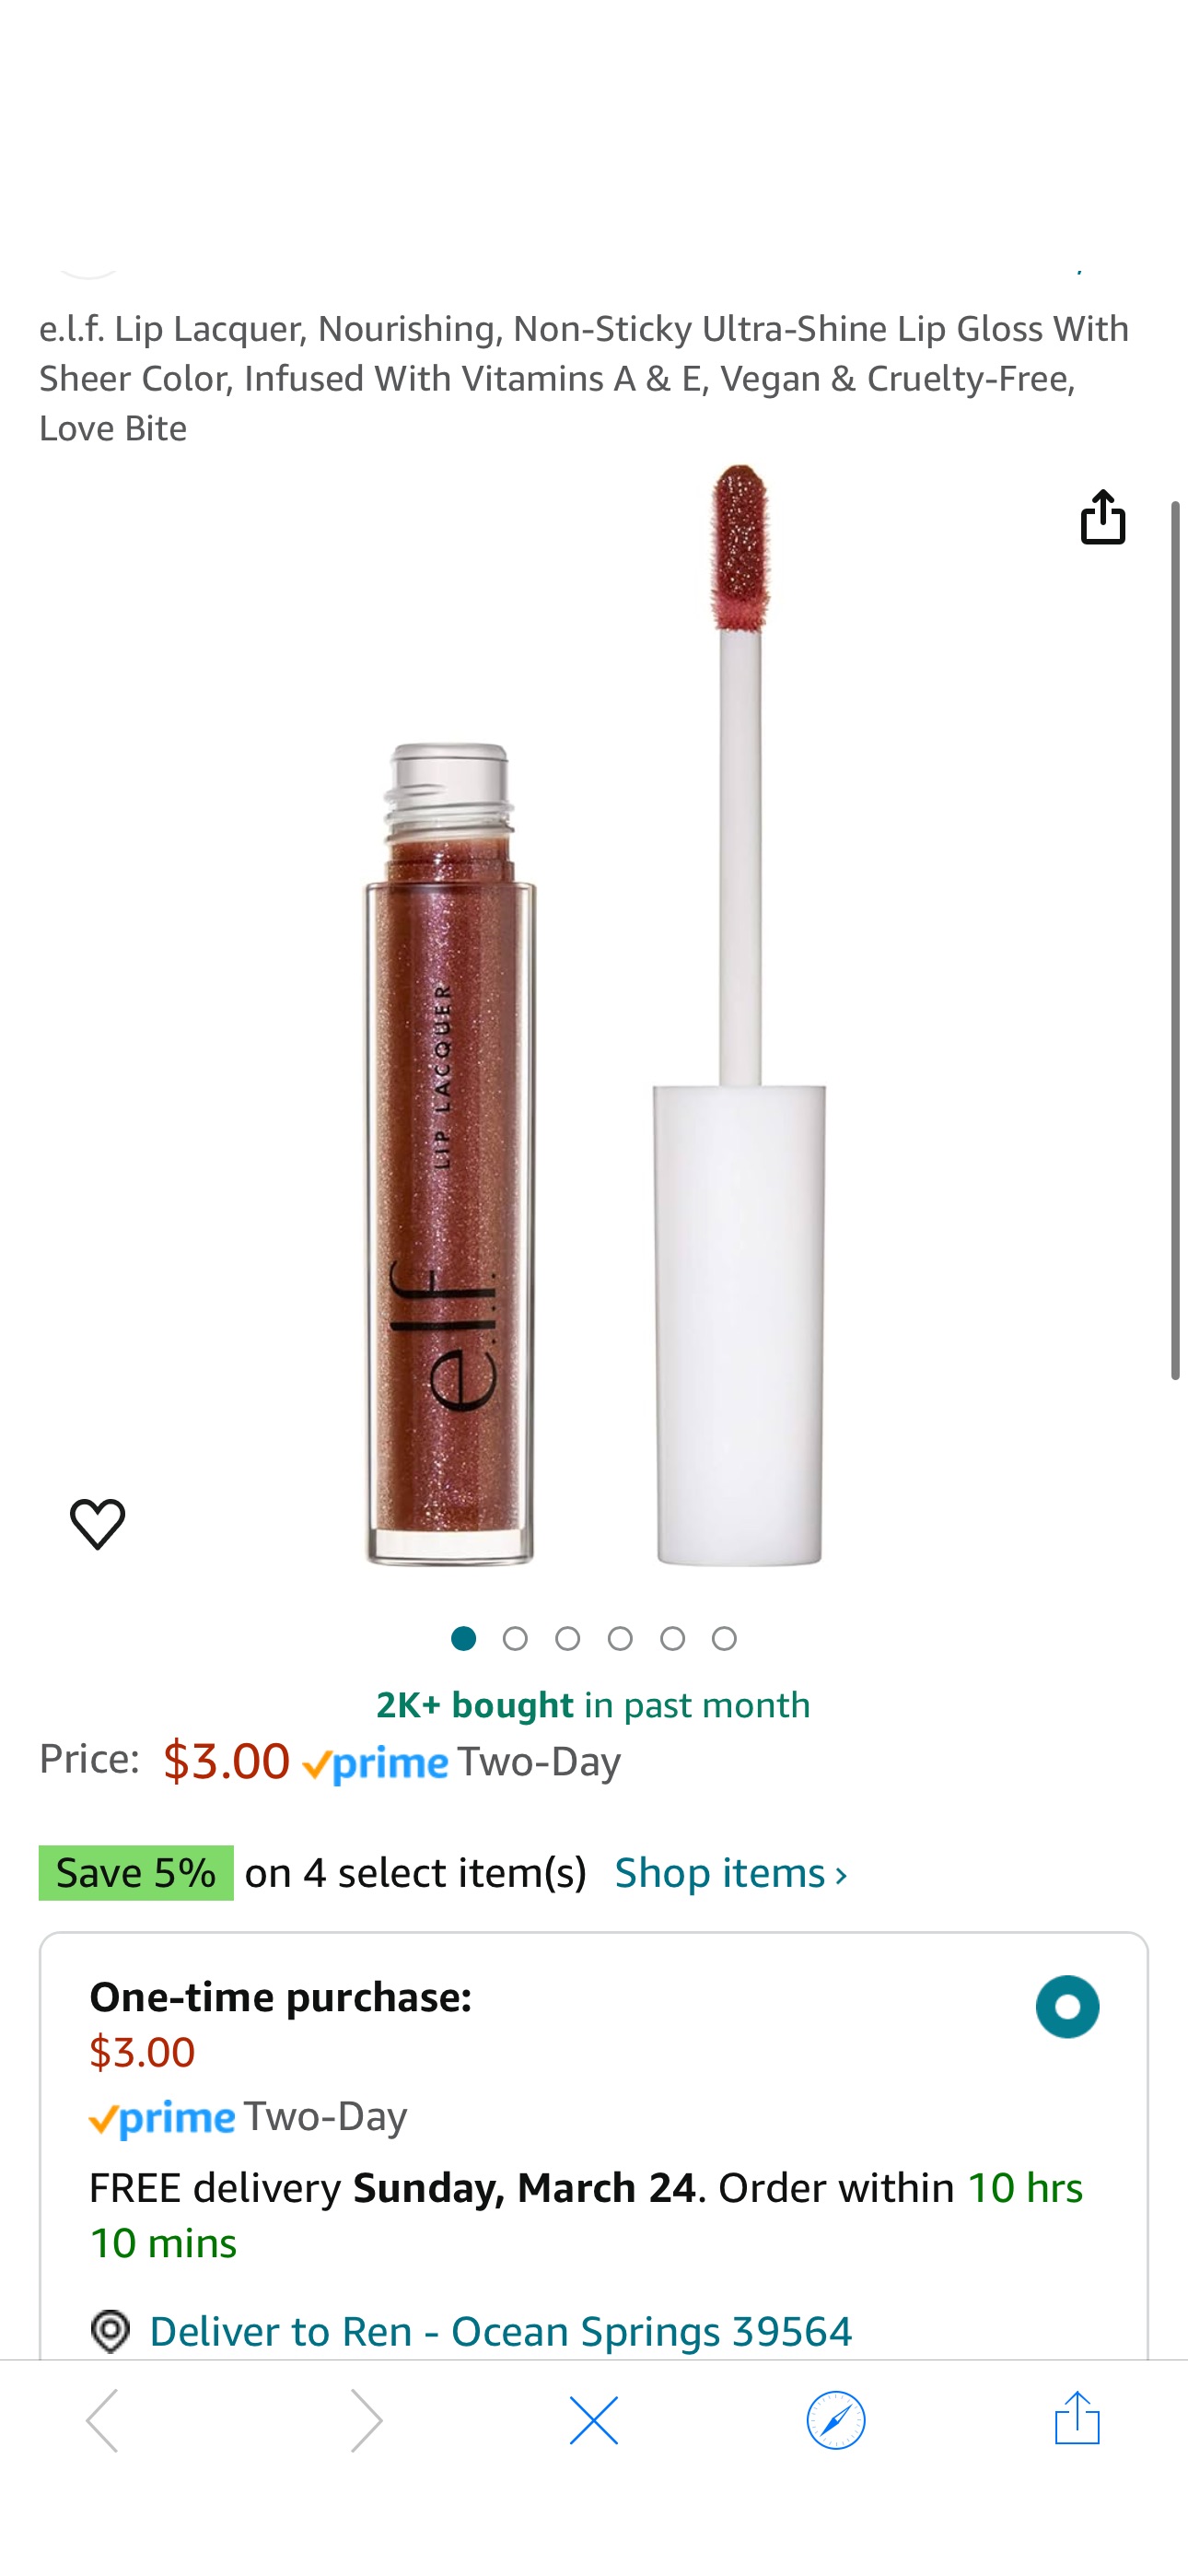 Amazon.com: e.l.f. Lip Lacquer, Nourishing, Non-Sticky Ultra-Shine Lip Gloss With Sheer Color, Infused With Vitamins A & E, Vegan & Cruelty-Free, Love Bite : Beauty & Personal Care